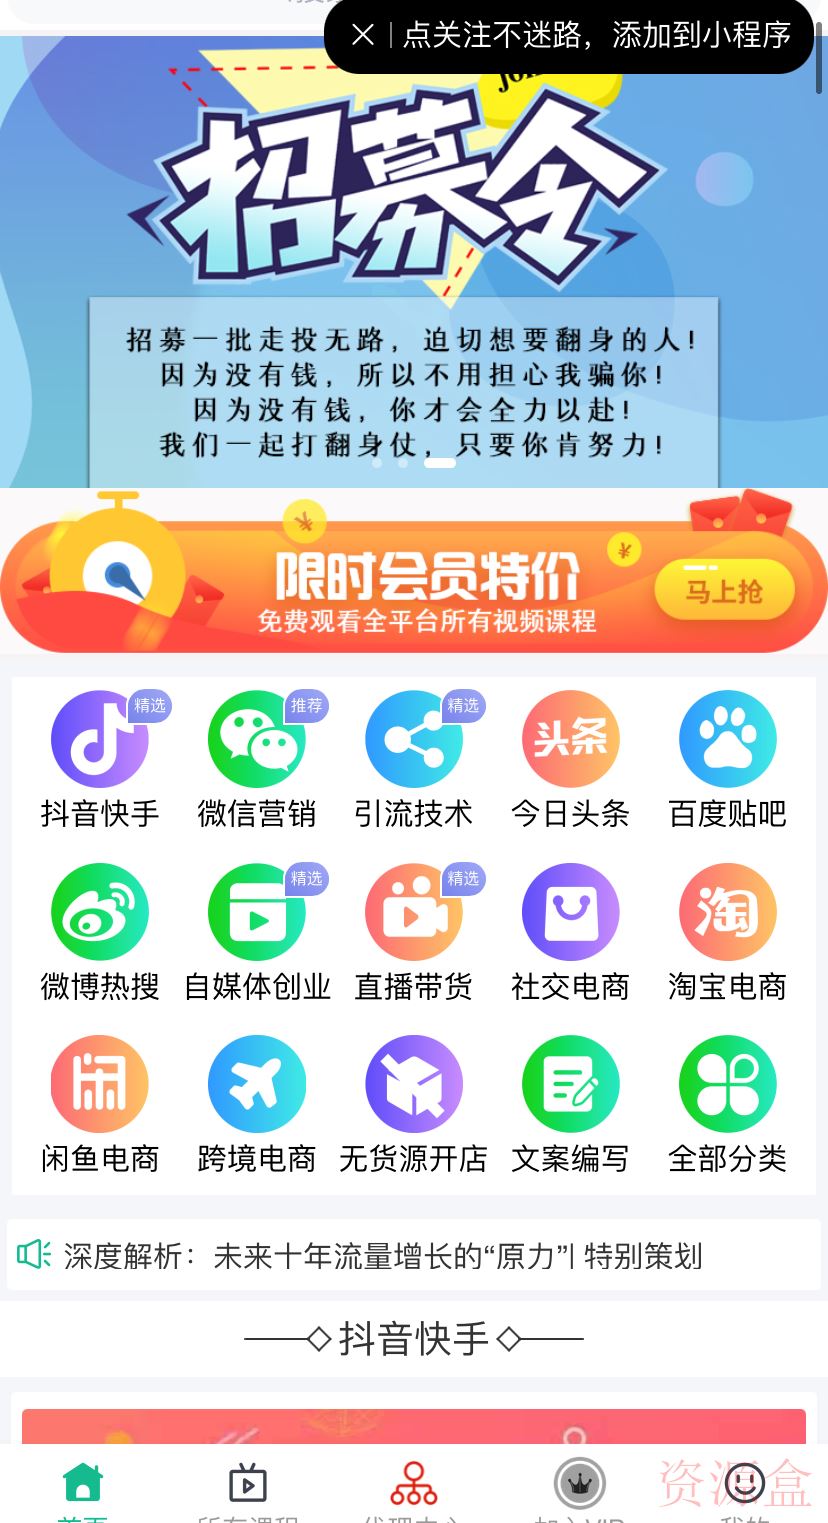 新版2021常识付费系统付费阅读小程序源码常识付费平台-资源盒-www.ziyuanhe.cn-第8张图片